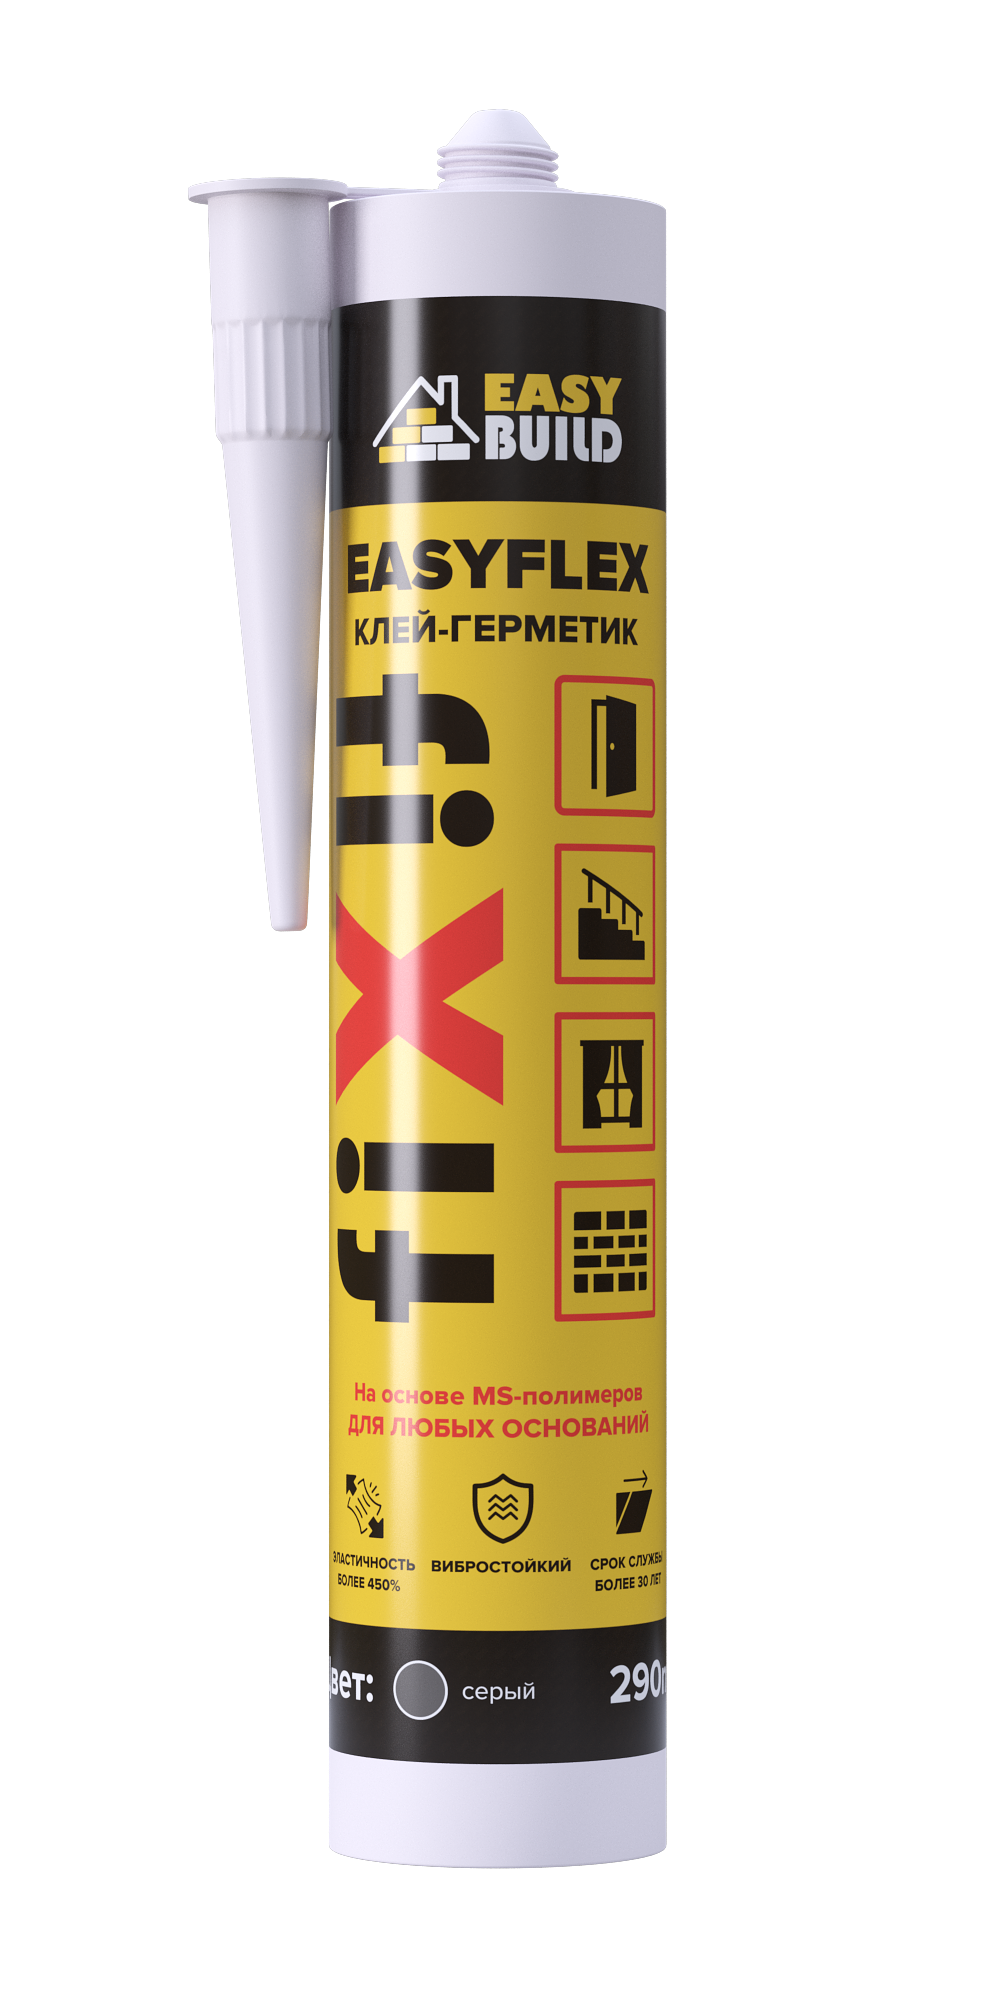 Клей-герметик мультифункциональный Easyflex Fix серый клей герметик point 103 авто ultra polymer прозрачный 290 мл